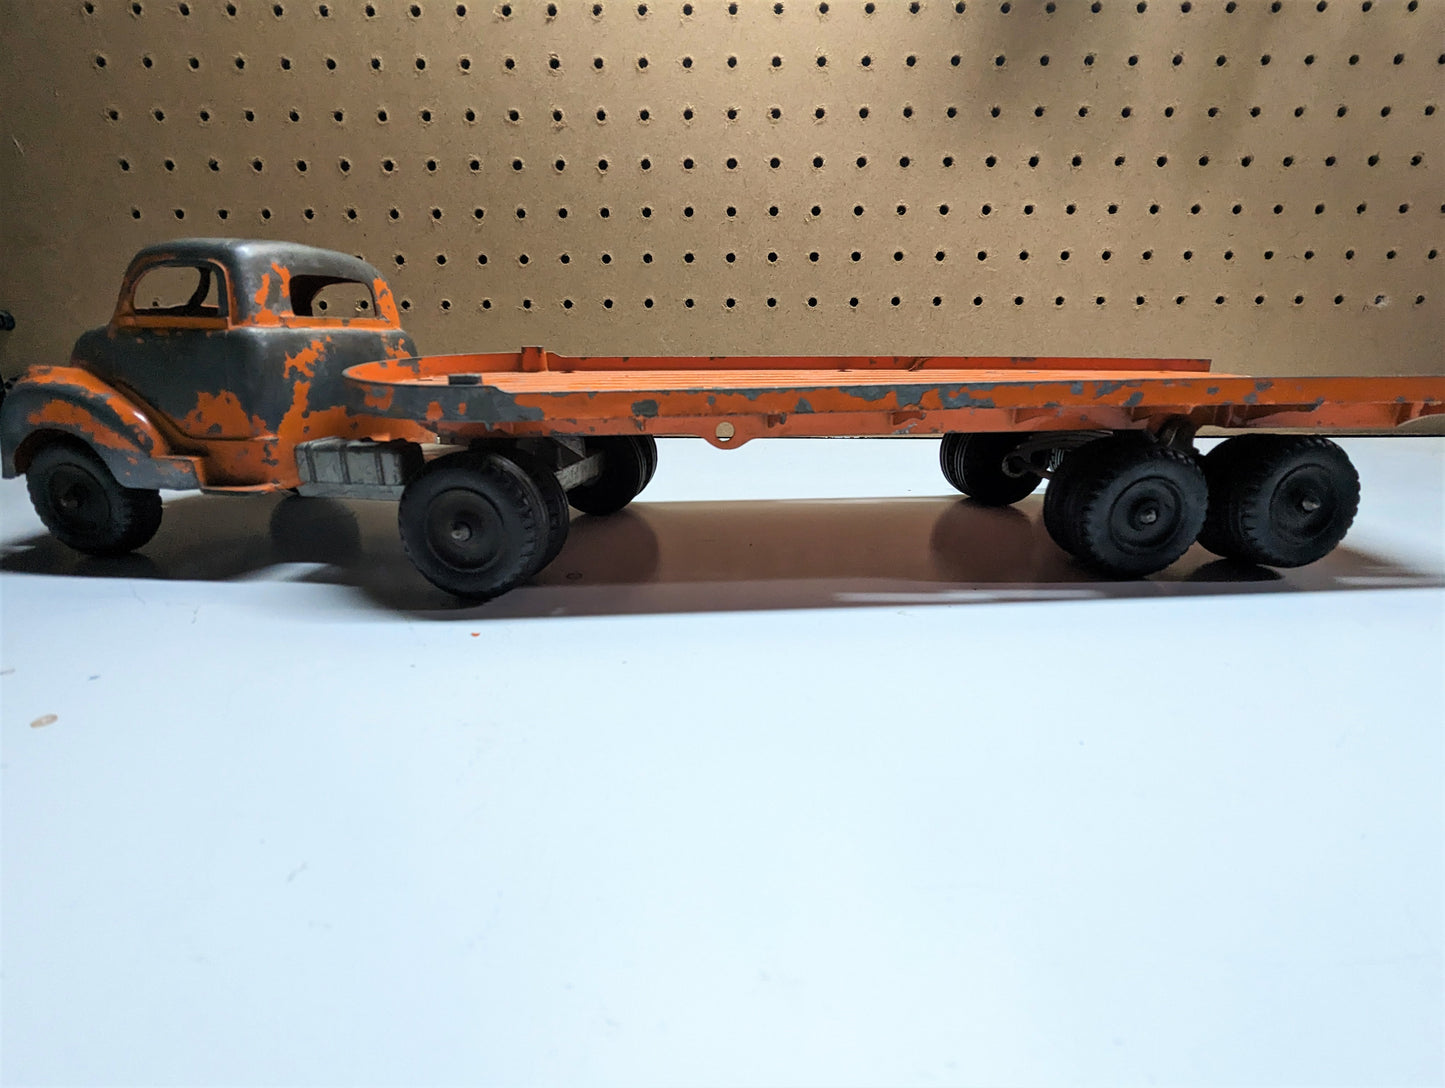 1950 Hubley Stake Truck 500 Series Vintage Orange Toy Flatbed